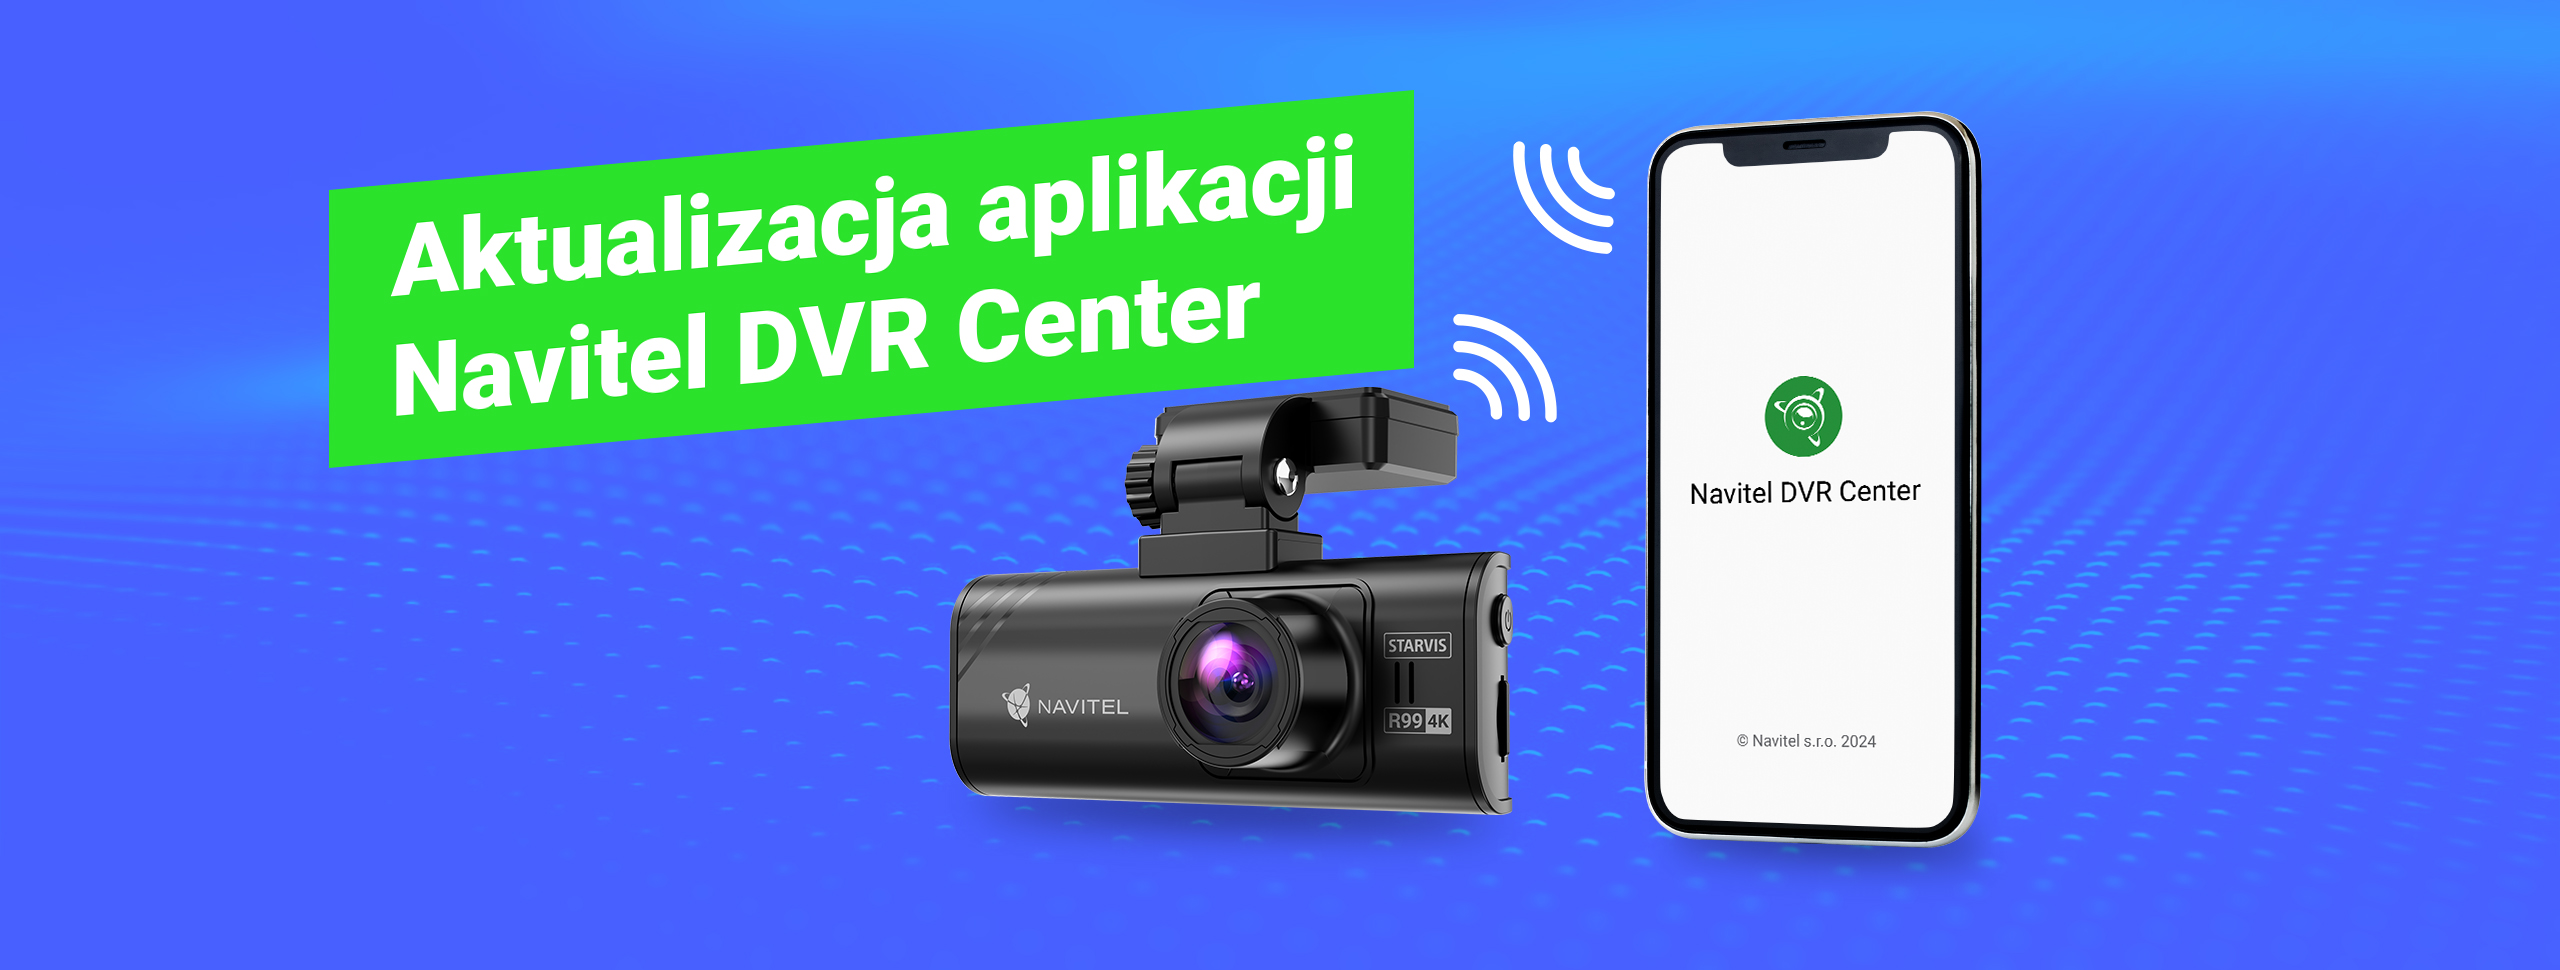 Aplikacja Navitel DVR Center otrzymała aktualizację